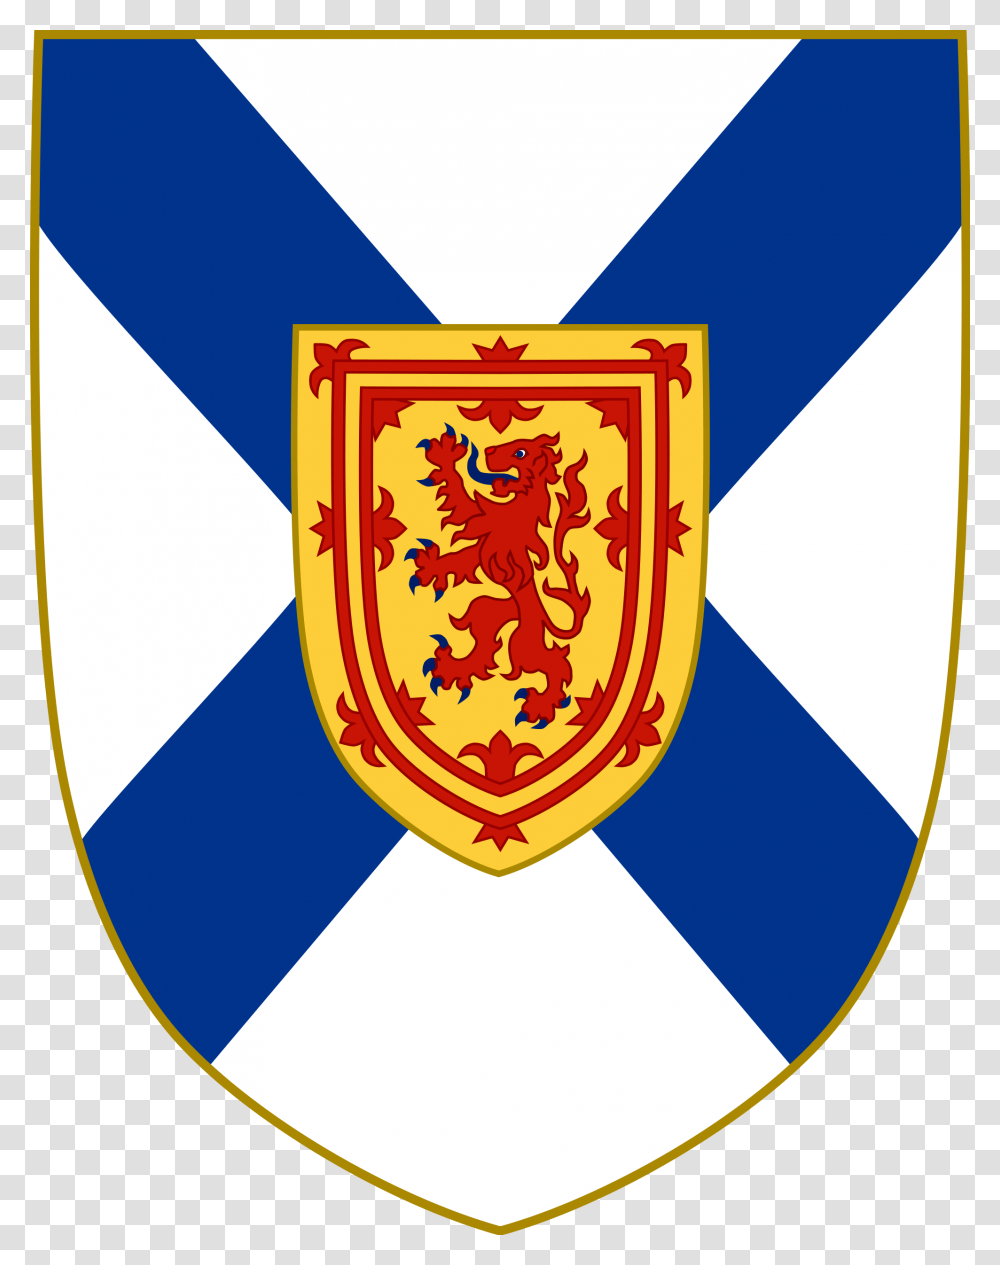 Nova Scotia Shield Of Arms, Armor Transparent Png